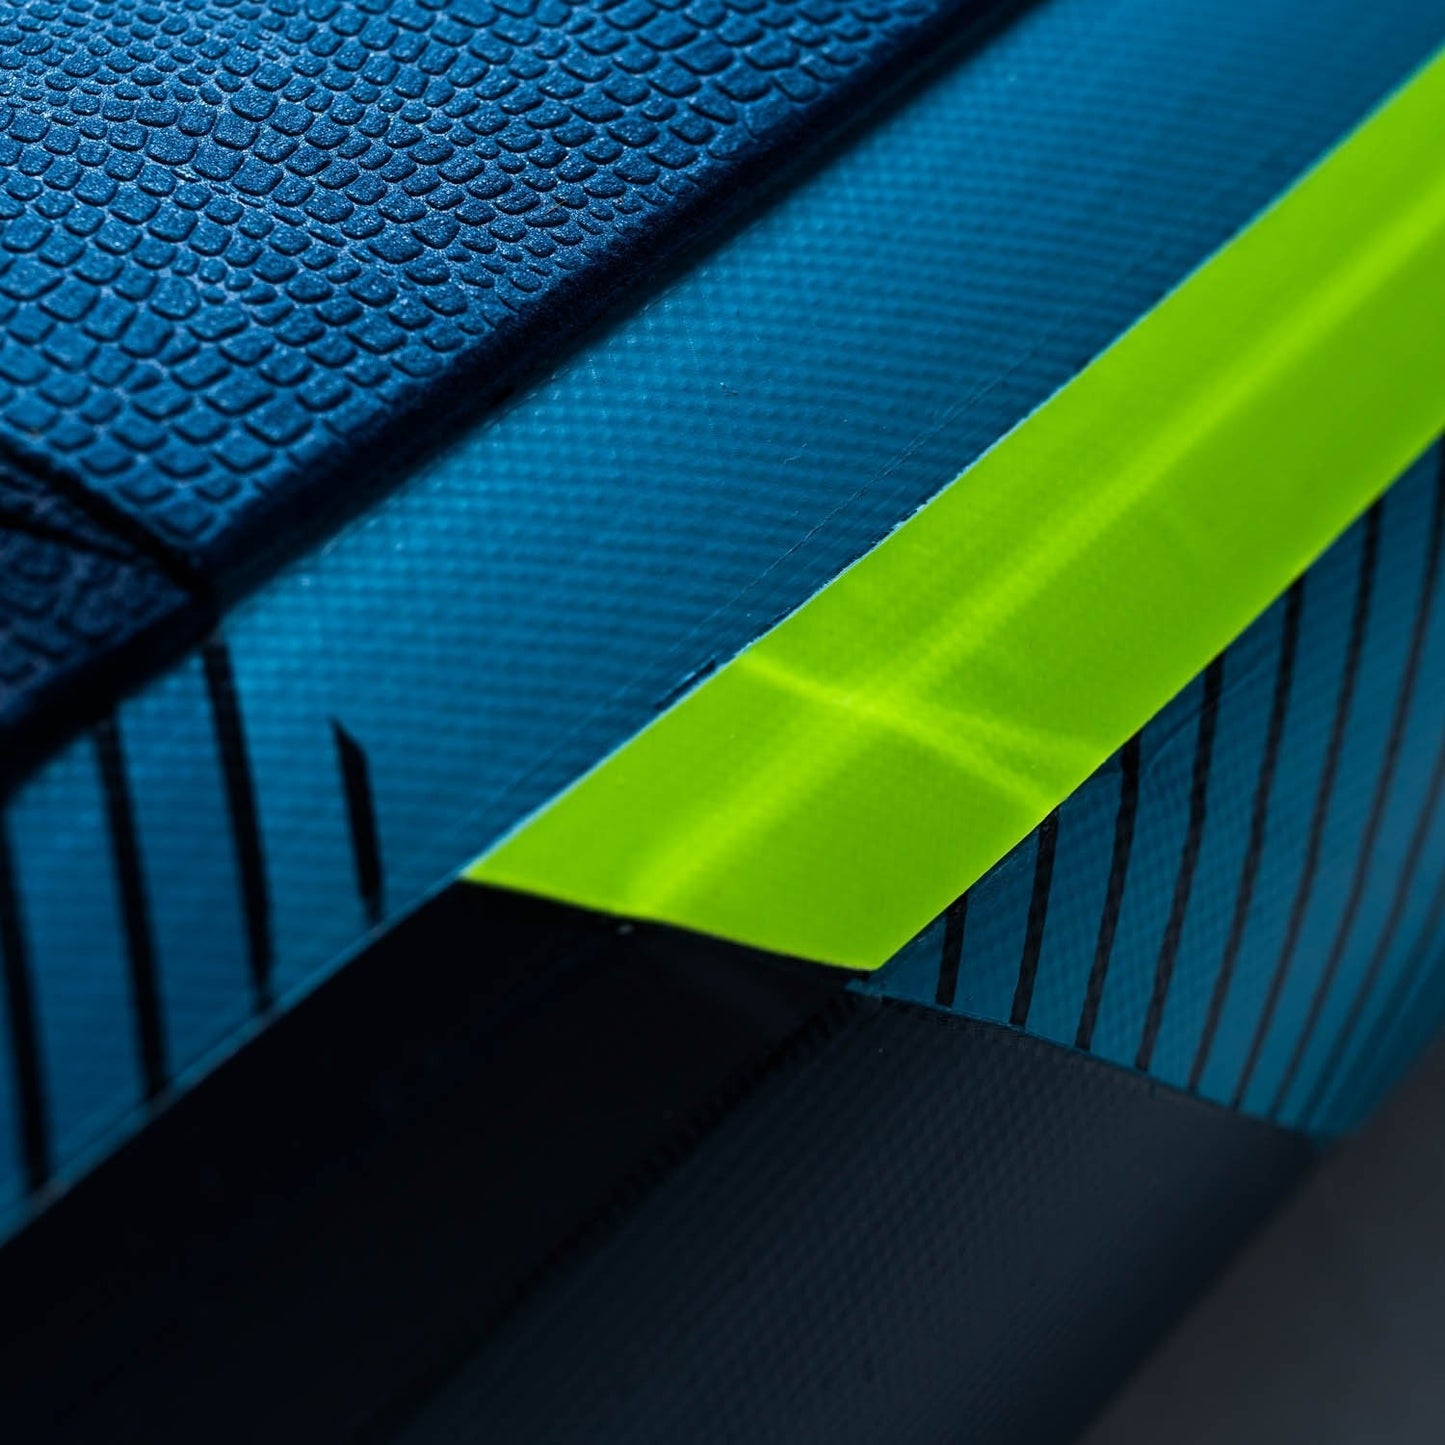 【予約受付中】Jobe Duna 11.6 Inflattable Paddle Board Package Steel Blue エアロ デュナ SUP ボード 11.6パッケージ スチールブルー